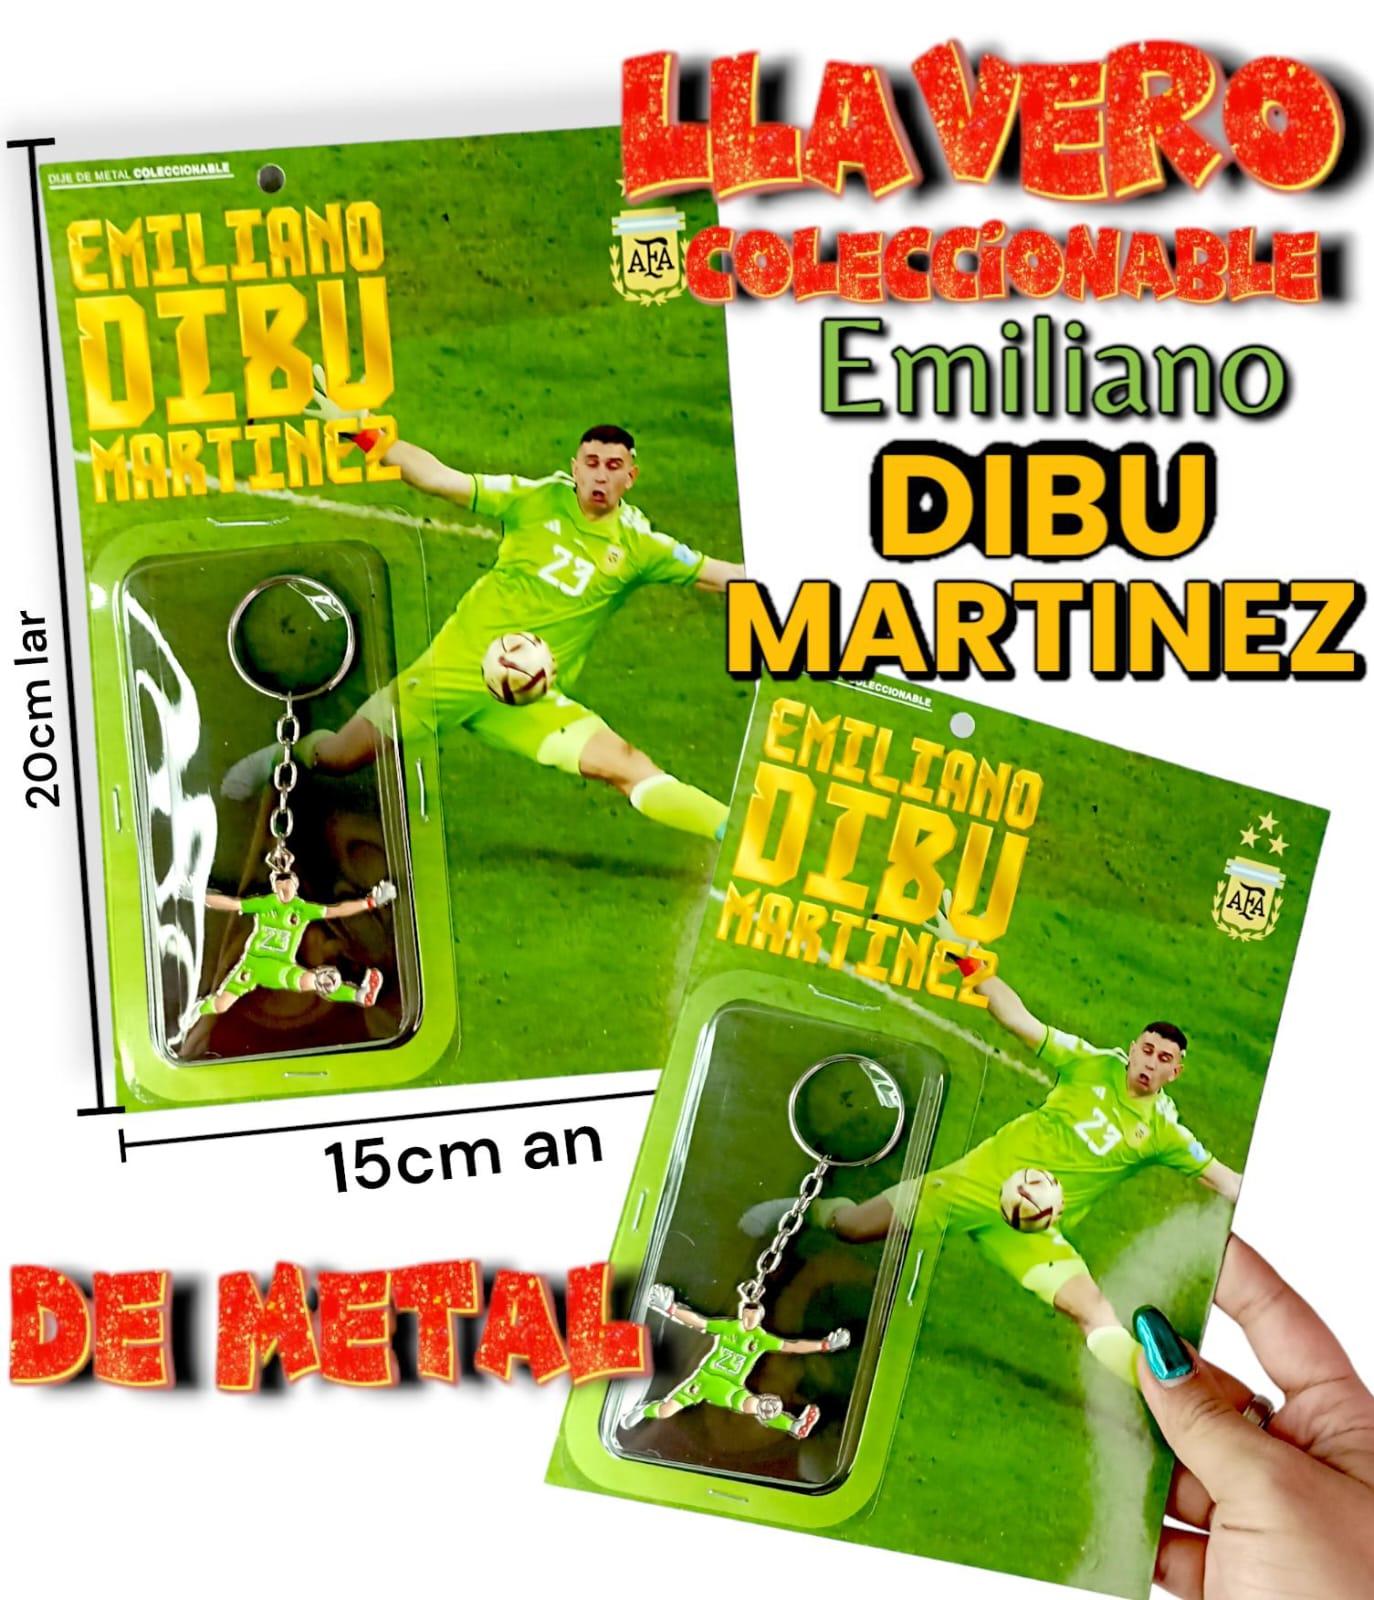 Llavero Coleccionables Emiliano Dibu Martinez De Metal